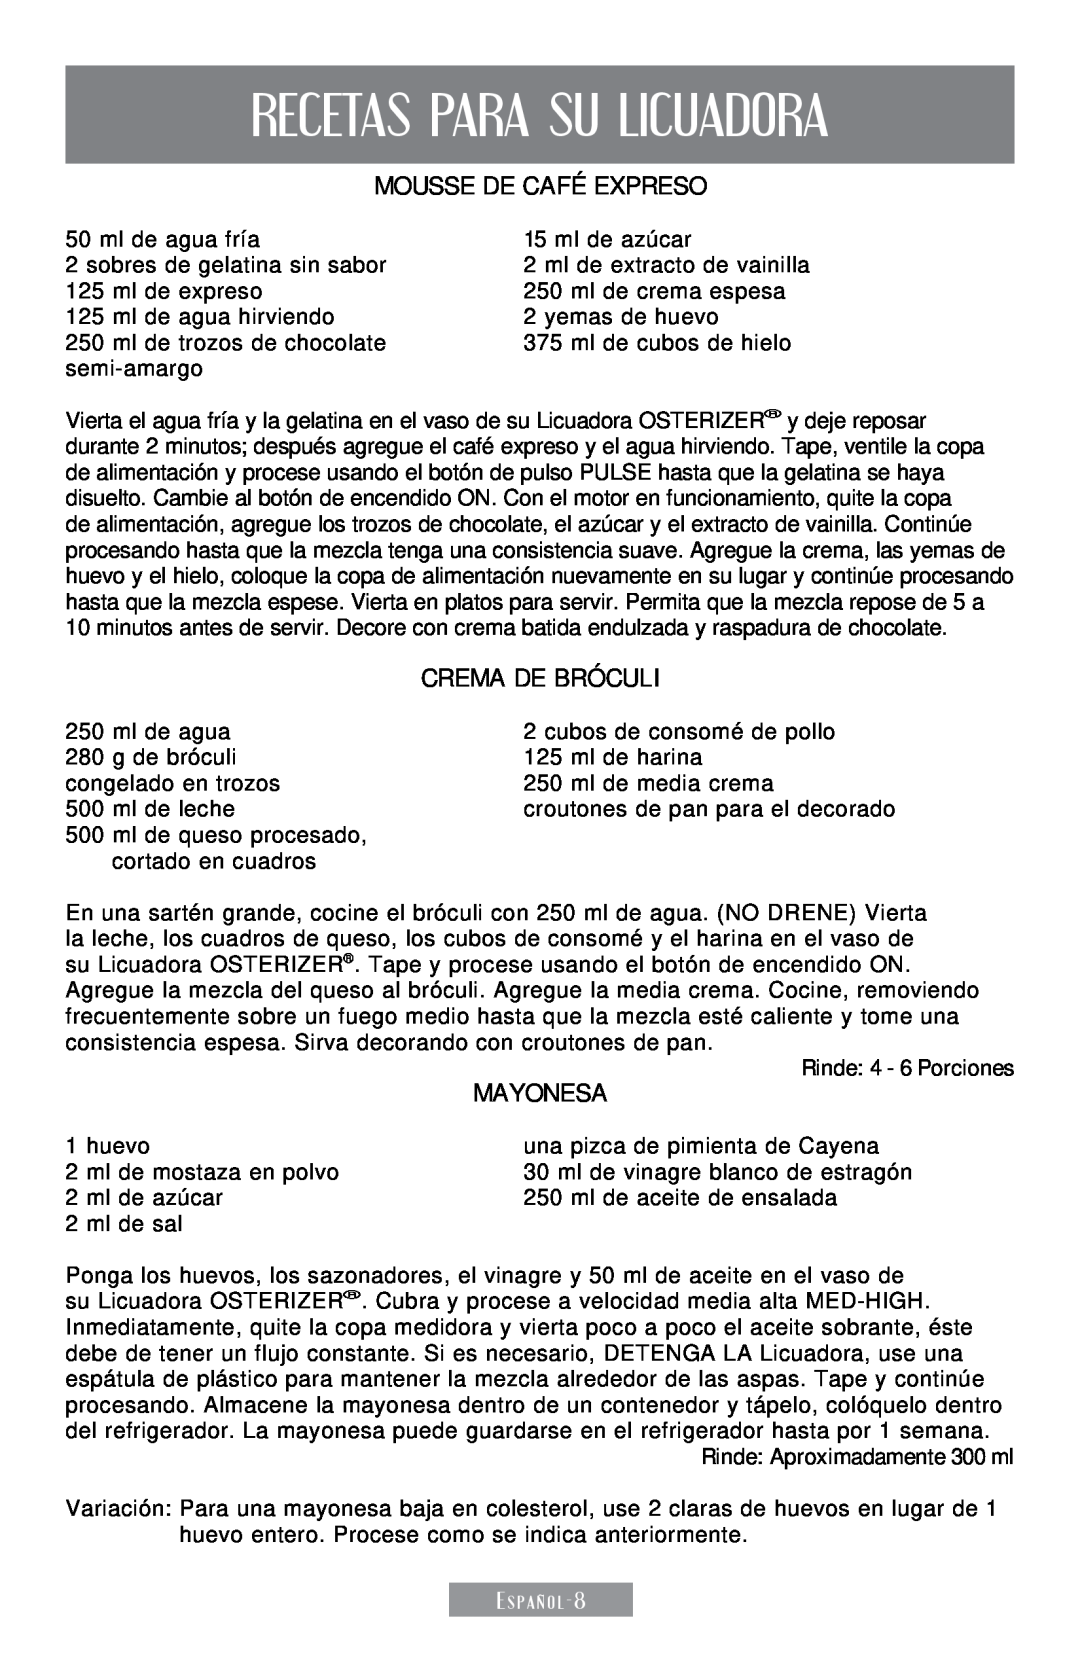 Sunbeam 250-22 instruction manual Recetas Para Su Licuadora, Mousse de Café Expreso, Crema de Bróculi, Mayonesa 